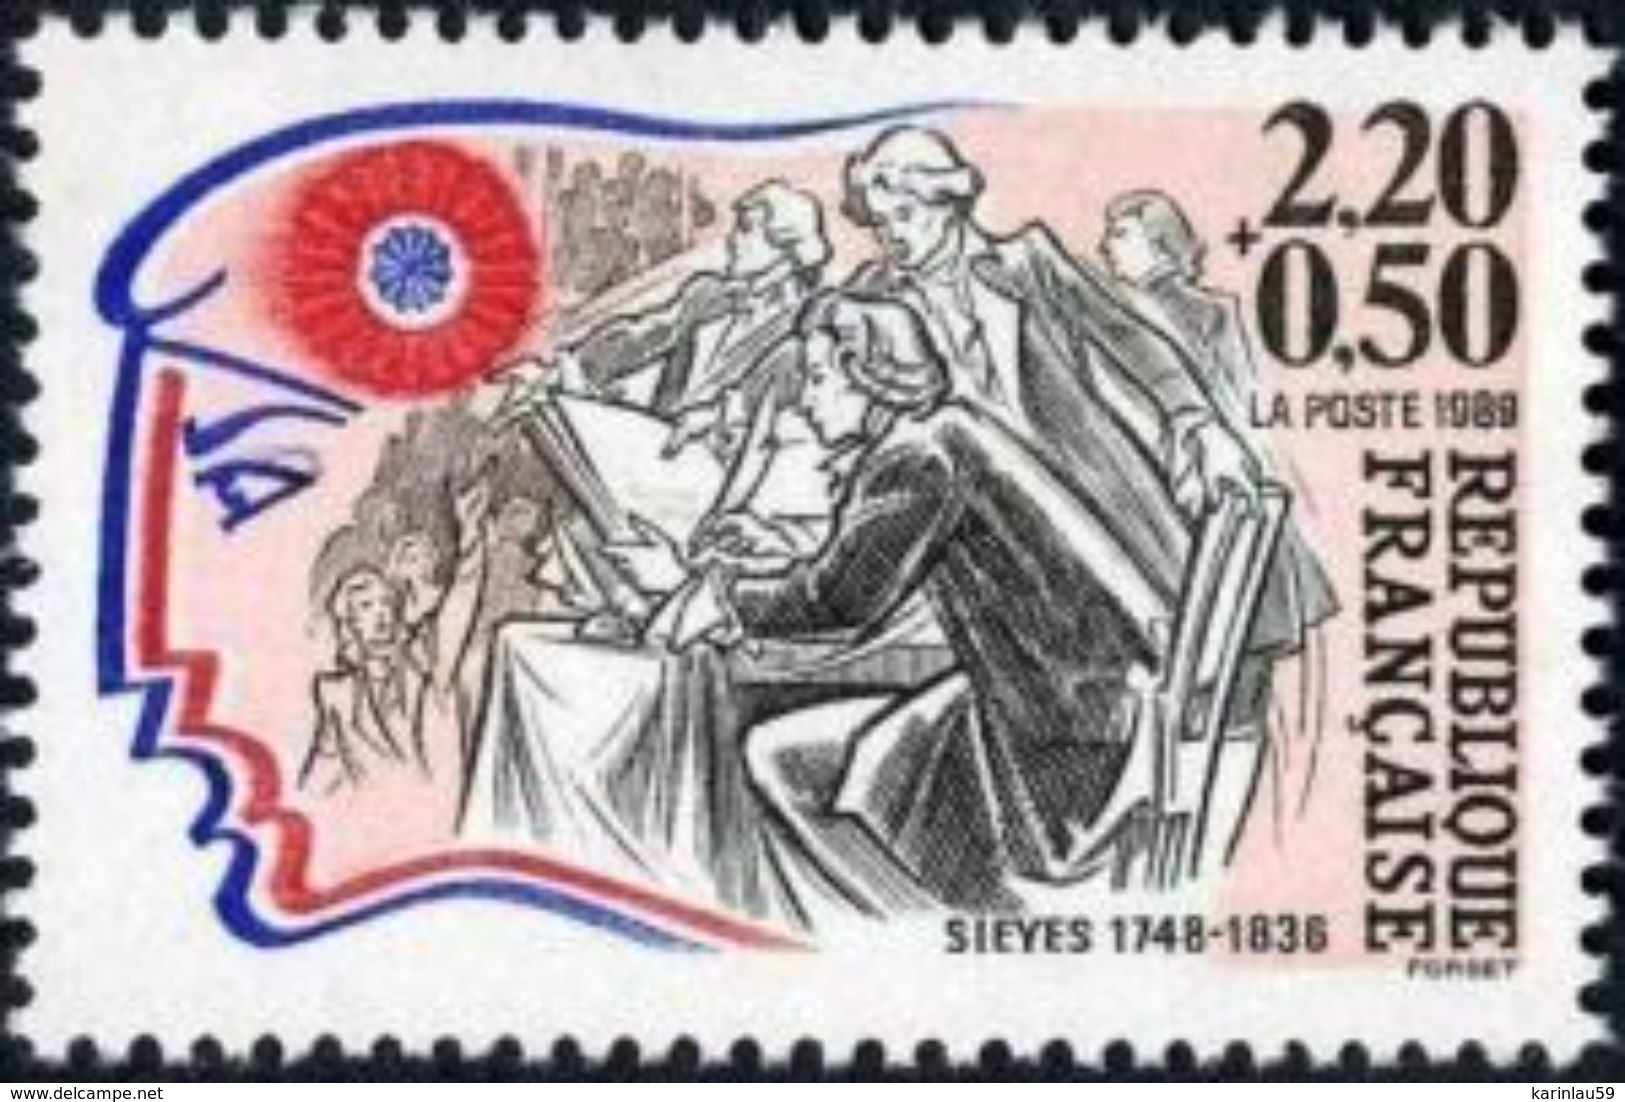 FRANCE 1989 - Y&T 2564 - Personnages Célèbres De La Révolution - Sieyes - Unused Stamps